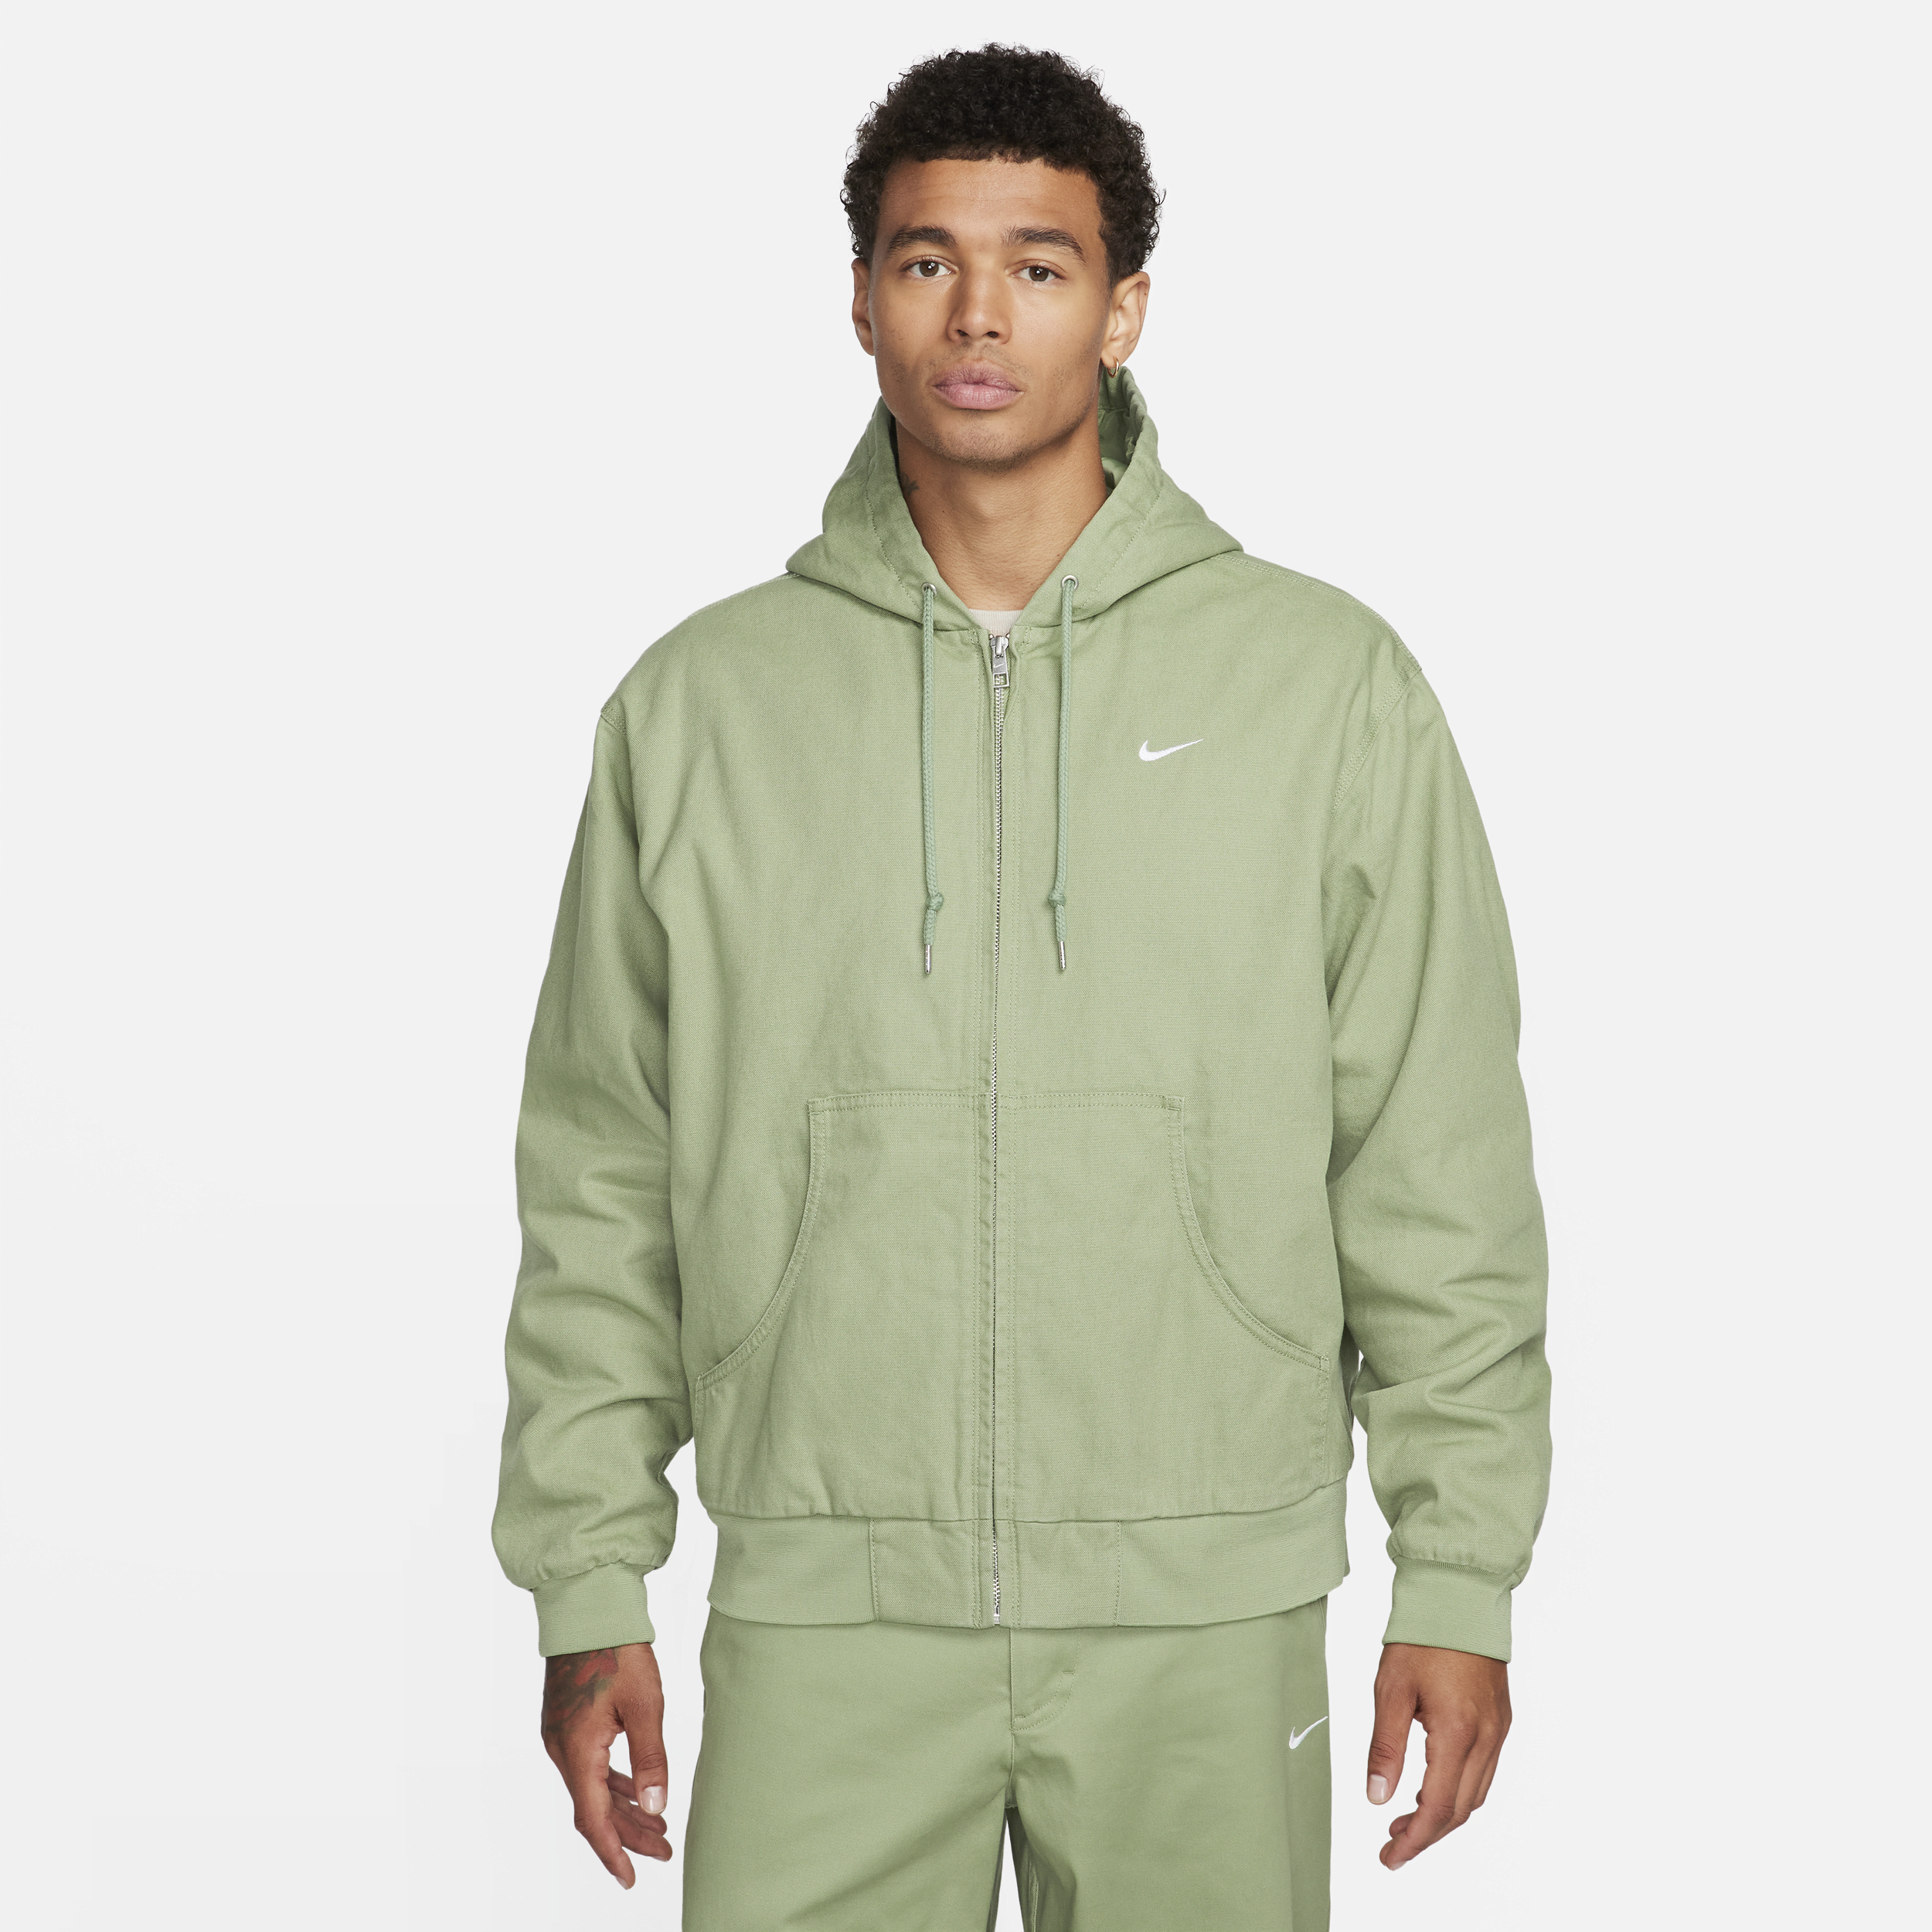 Polstret Nike Life-jakke med hætte til mænd - grøn